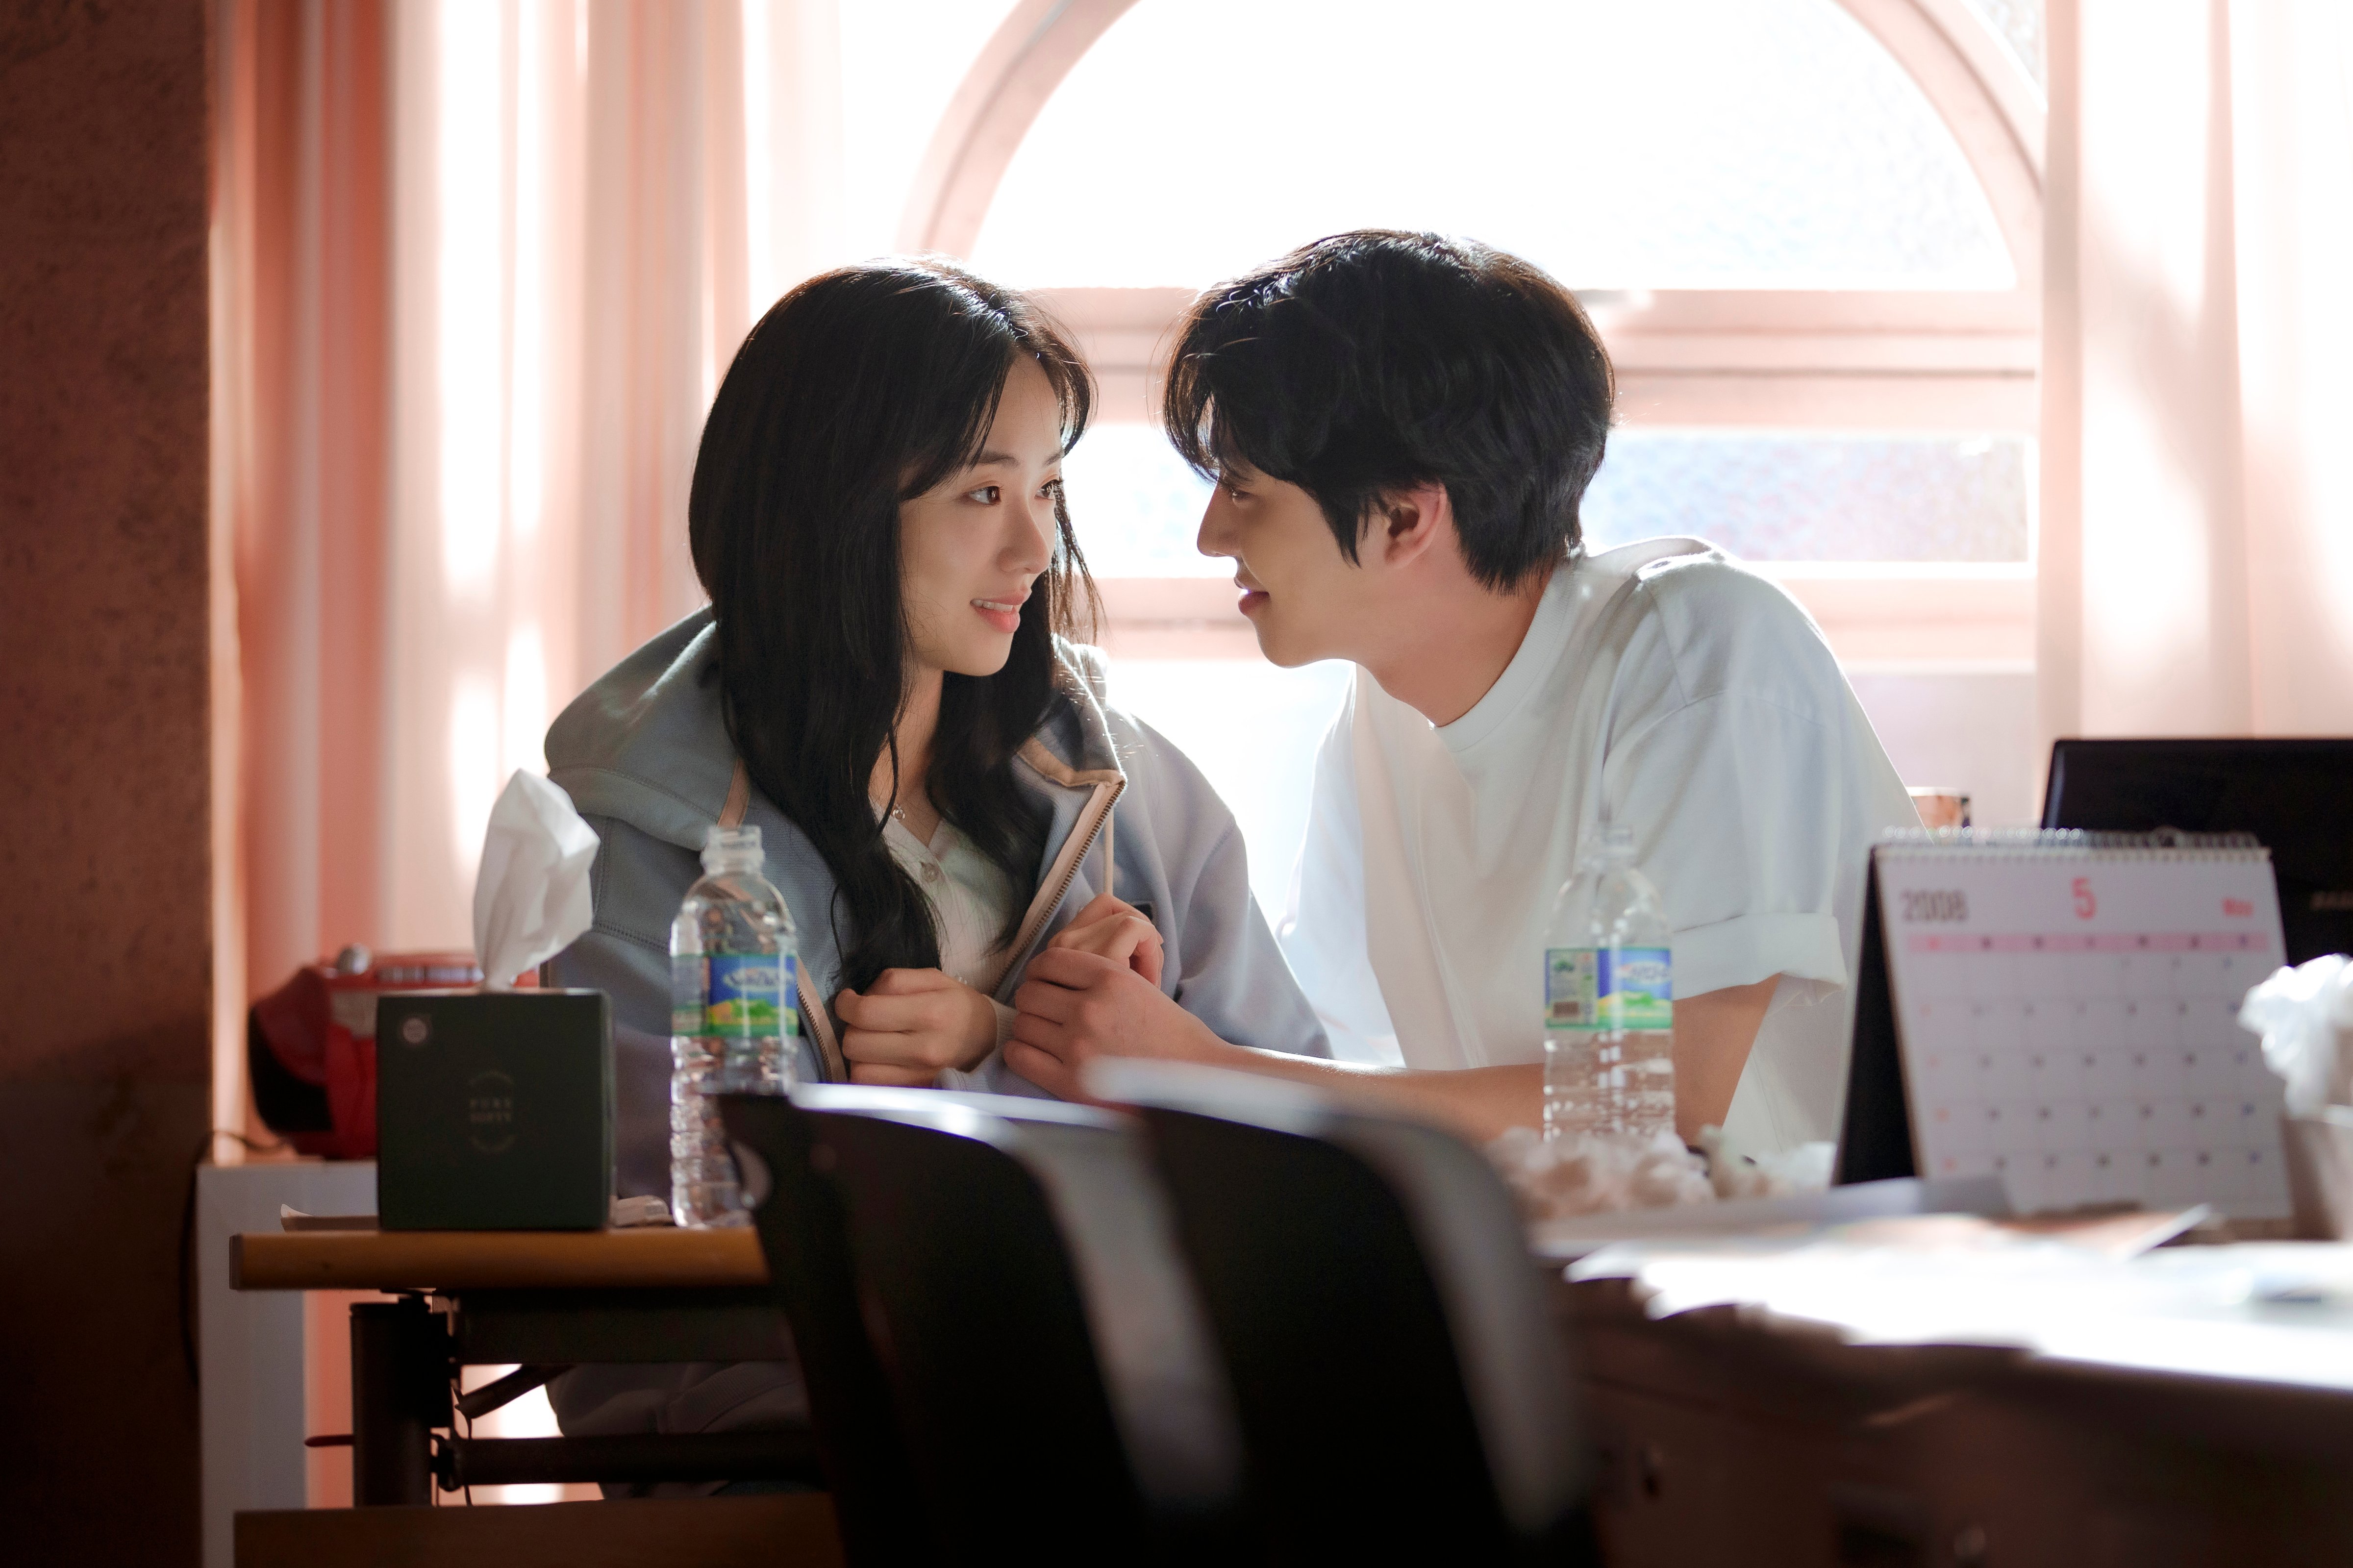 Jeon Yeo-been and Ahn Hyo-seop in <i></p>
<p>Un temps vous a appelé</i> (Grâce à Netflix) “/></p>
<p>Jeon Yeo-Been et Ahn Hyo-Seop dans <i>Un temps vous a appelé</i></p>
<p> <em>Un jour ou un jour</em> pourrait être pour toi. Ahn Hyo-Seop, l’un des hommes élégants dans la romance légère 2022 <i></i>, S’associe à Jeon Yeo-Been de <i>Vincenzo</i> Dans cette histoire sur une femme qui remonte au temps et rencontre un homme qui ressemble à son amant qui est décédé<i>.</i> L’émission taïwanaise originale a conduit à un boom du tourisme pour divers emplacements de tournage à Tainan, et News of the Korean Remake leur a depuis donné un coup de pouce supplémentaire, malgré le fait que la nouvelle série a été filmée en Corée.</p>
<h2><span id=